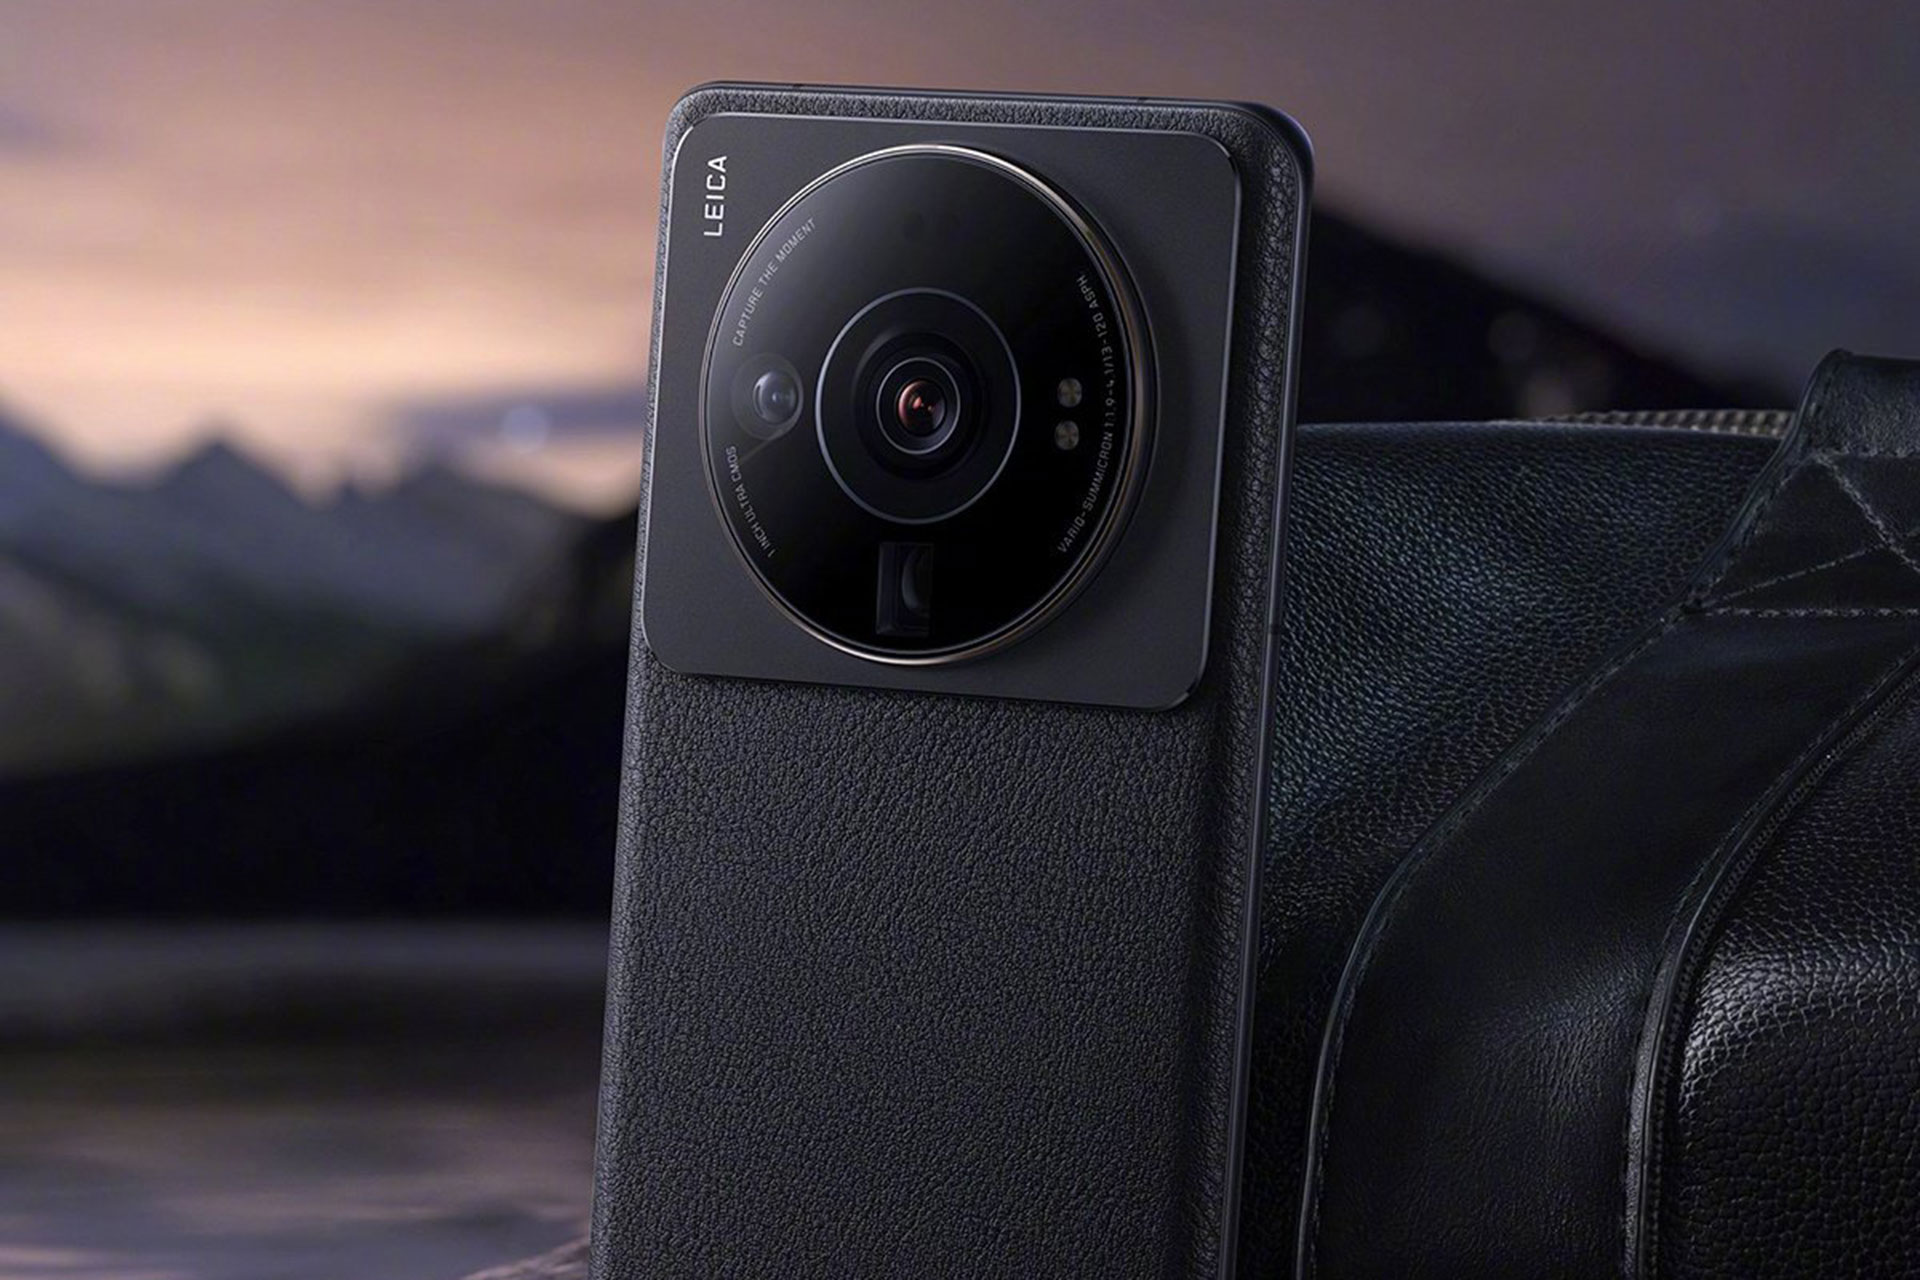 شیائومی ۱۲S اولترا با دوربین لایکا و سنسور یک اینچی سونی معرفی شد